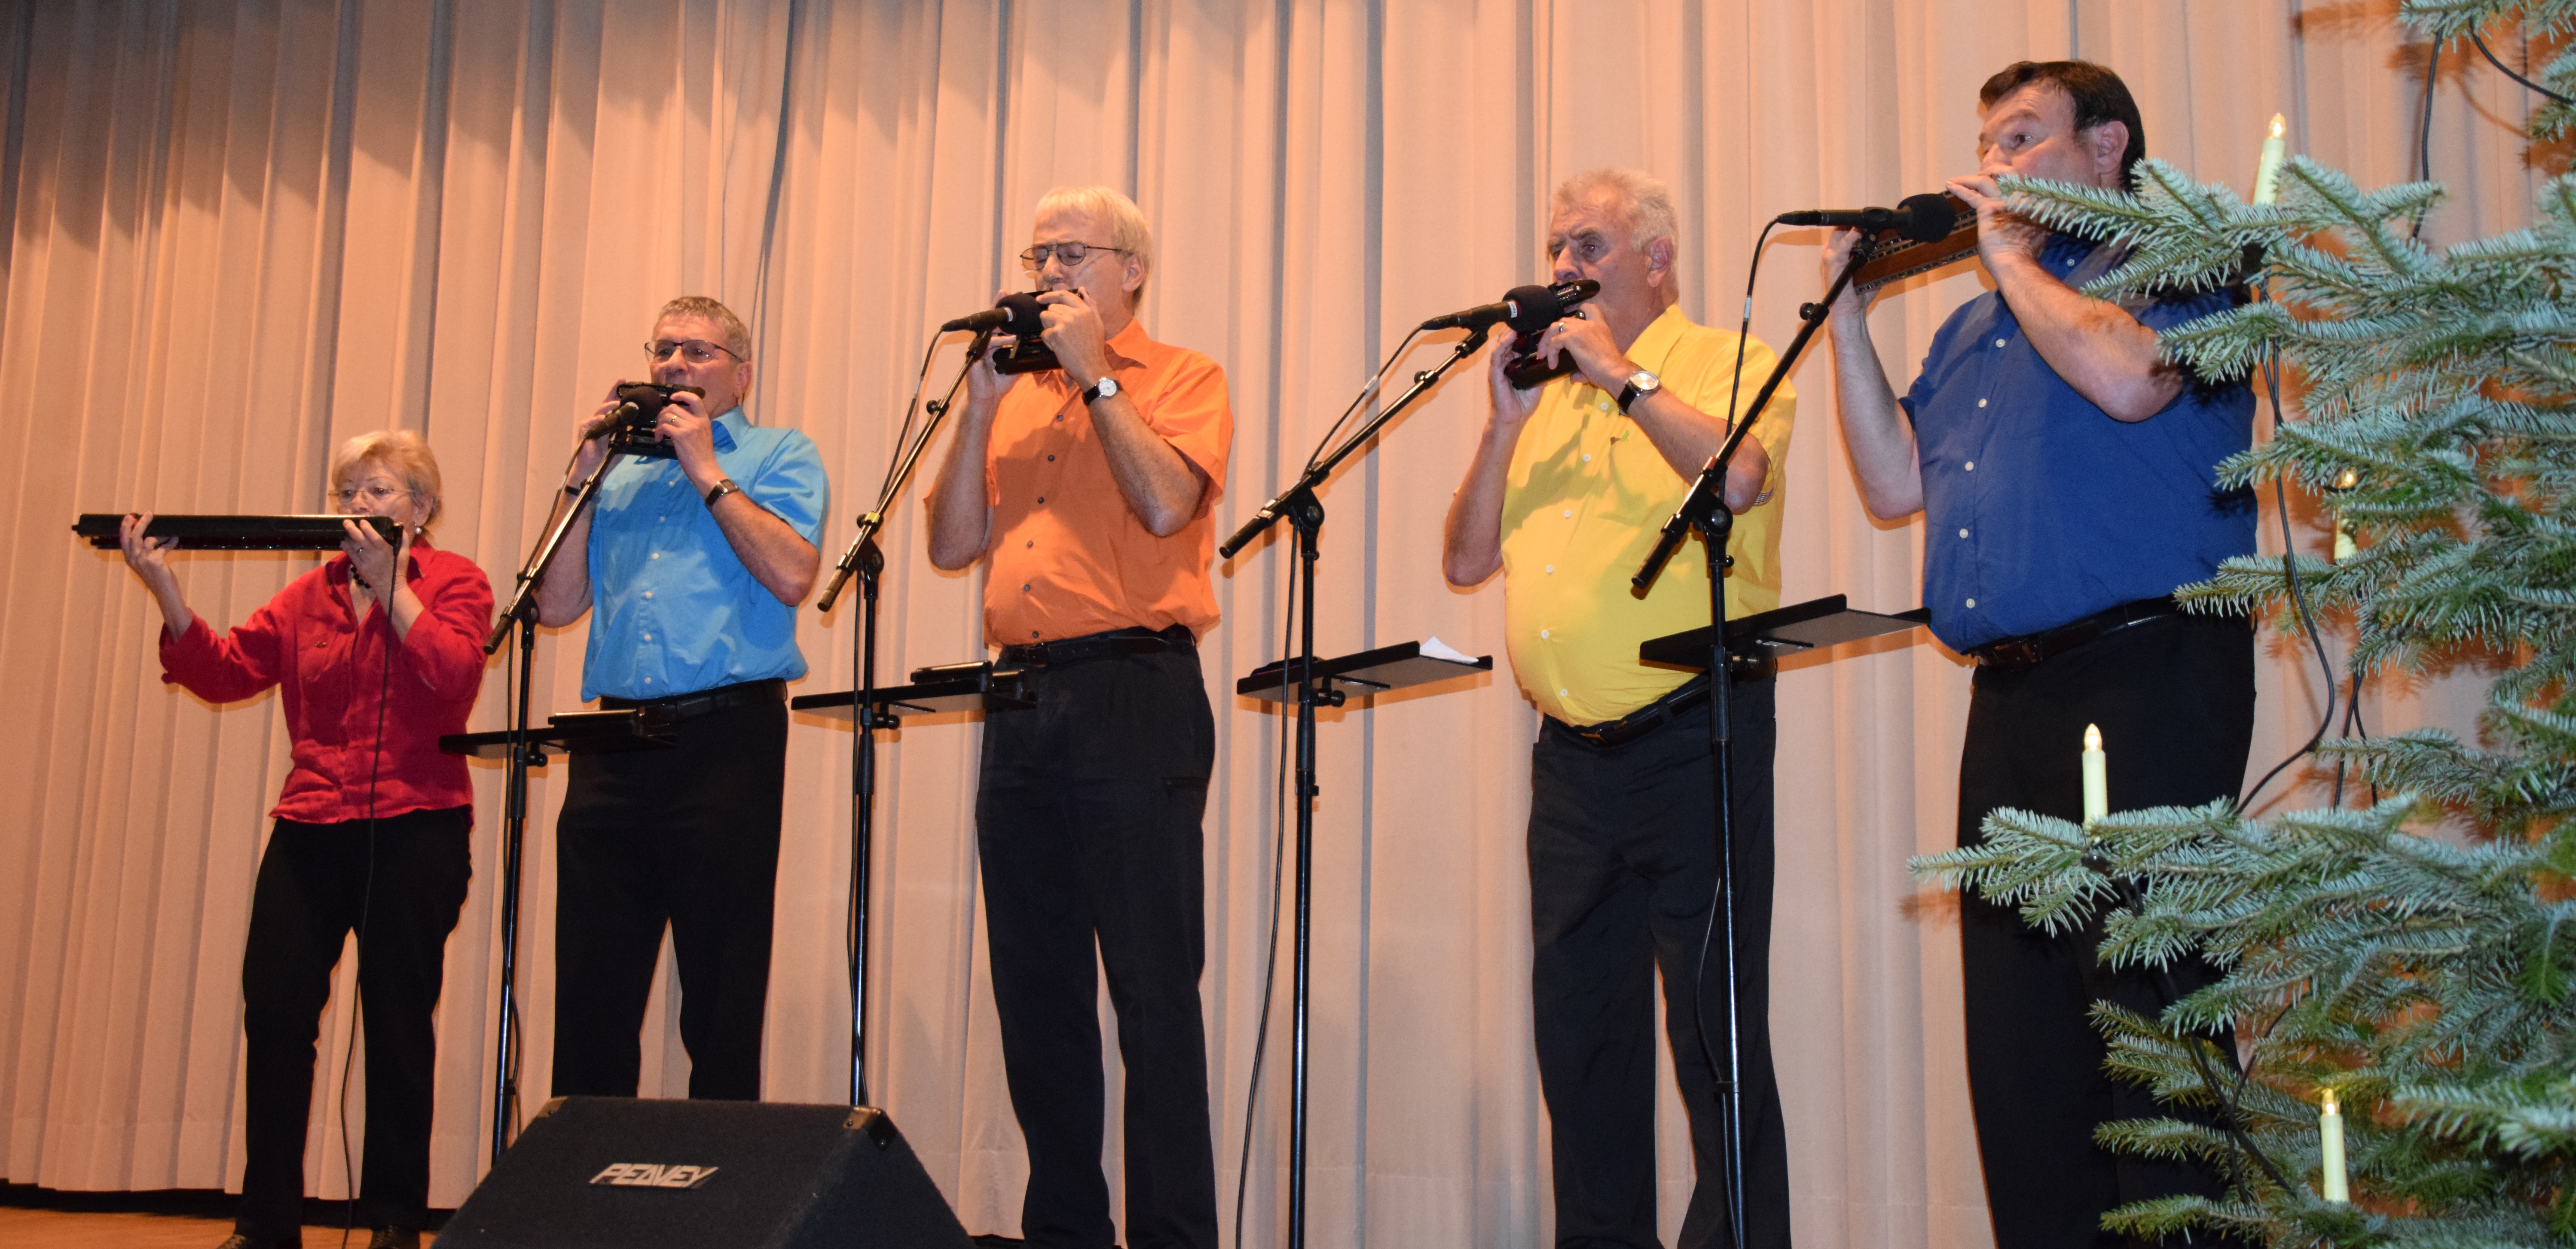 Das Luzerner Mundharmonika-Quintett «Colores» beim Auftritt an der Weihnachtsfeier. Bild zVg.